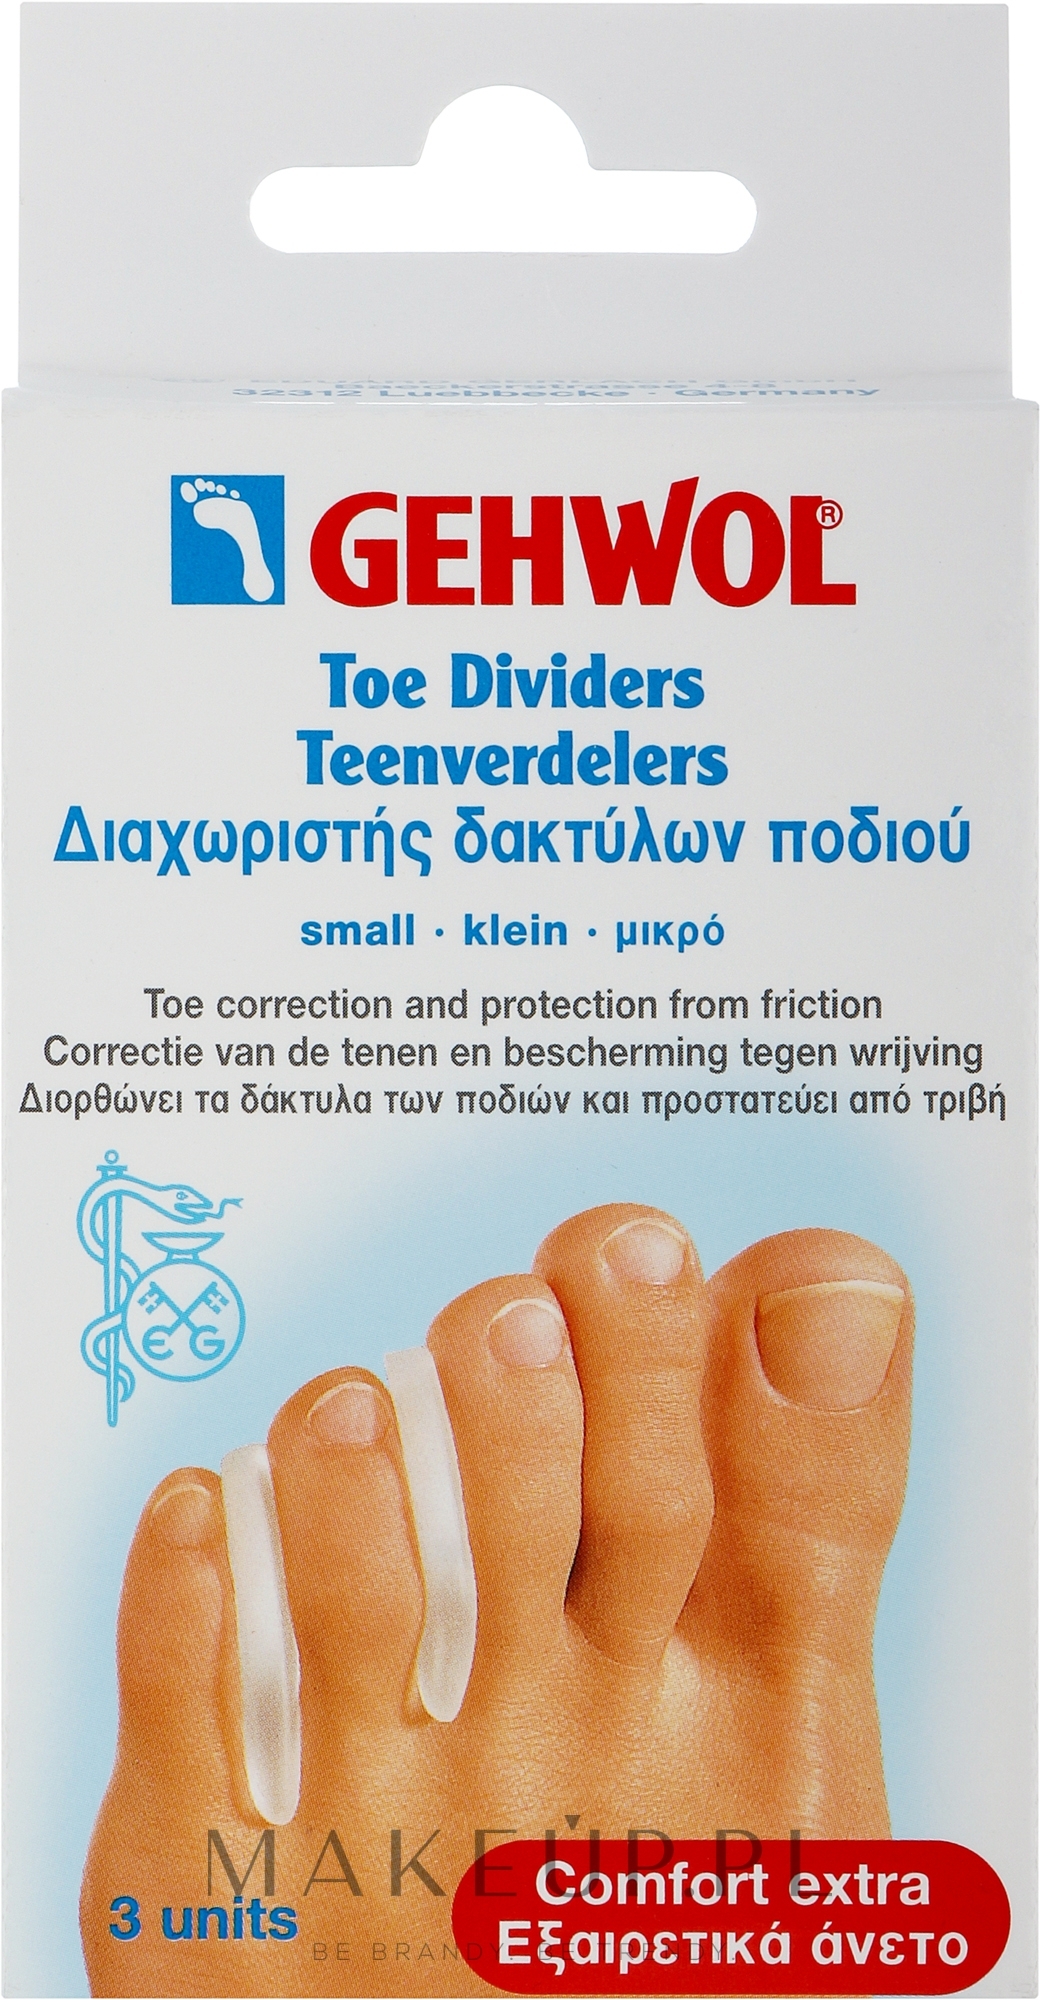 Rozdzielacz do palców stopy (mały) - Gehwol — Zdjęcie 3 szt.